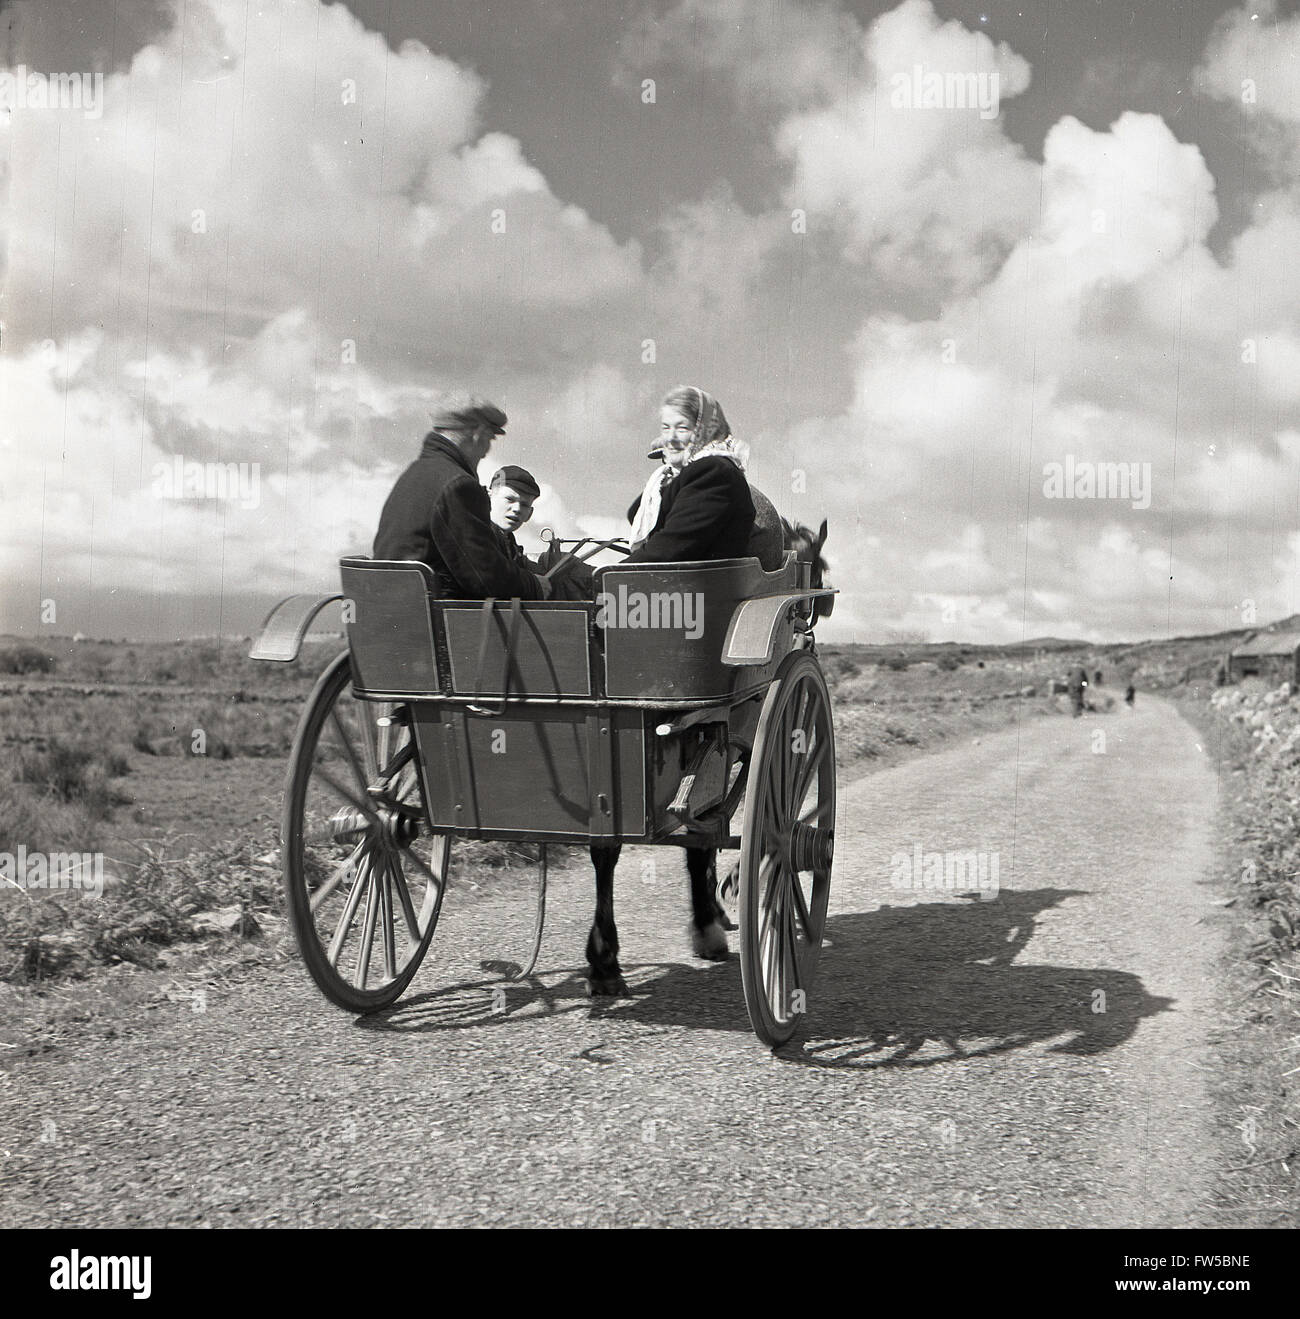 1950s, histórico, una familia irlandesa rural que viaja a caballo y trampa a lo largo de un carril del país en el oeste de Irlanda en esta imagen de J Allan Cash. Foto de stock